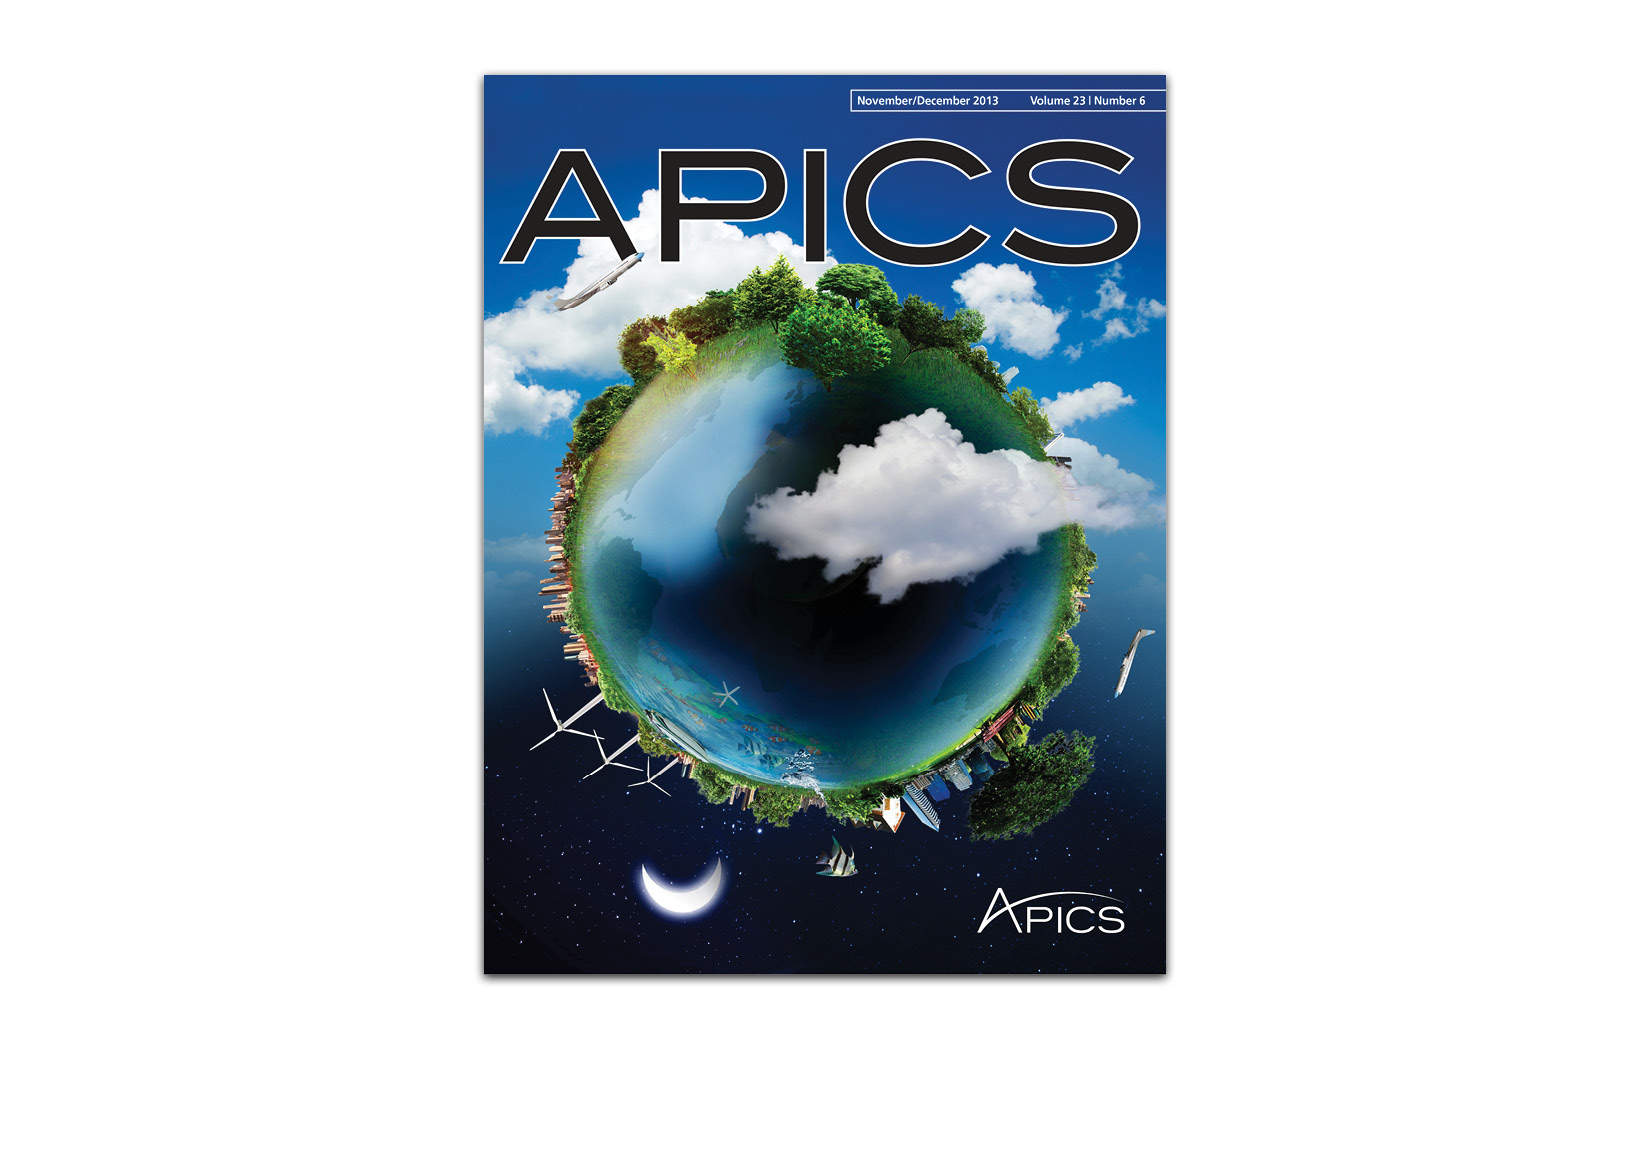  Cover for the November/December 2013&nbsp; APICS &nbsp;magazine. 